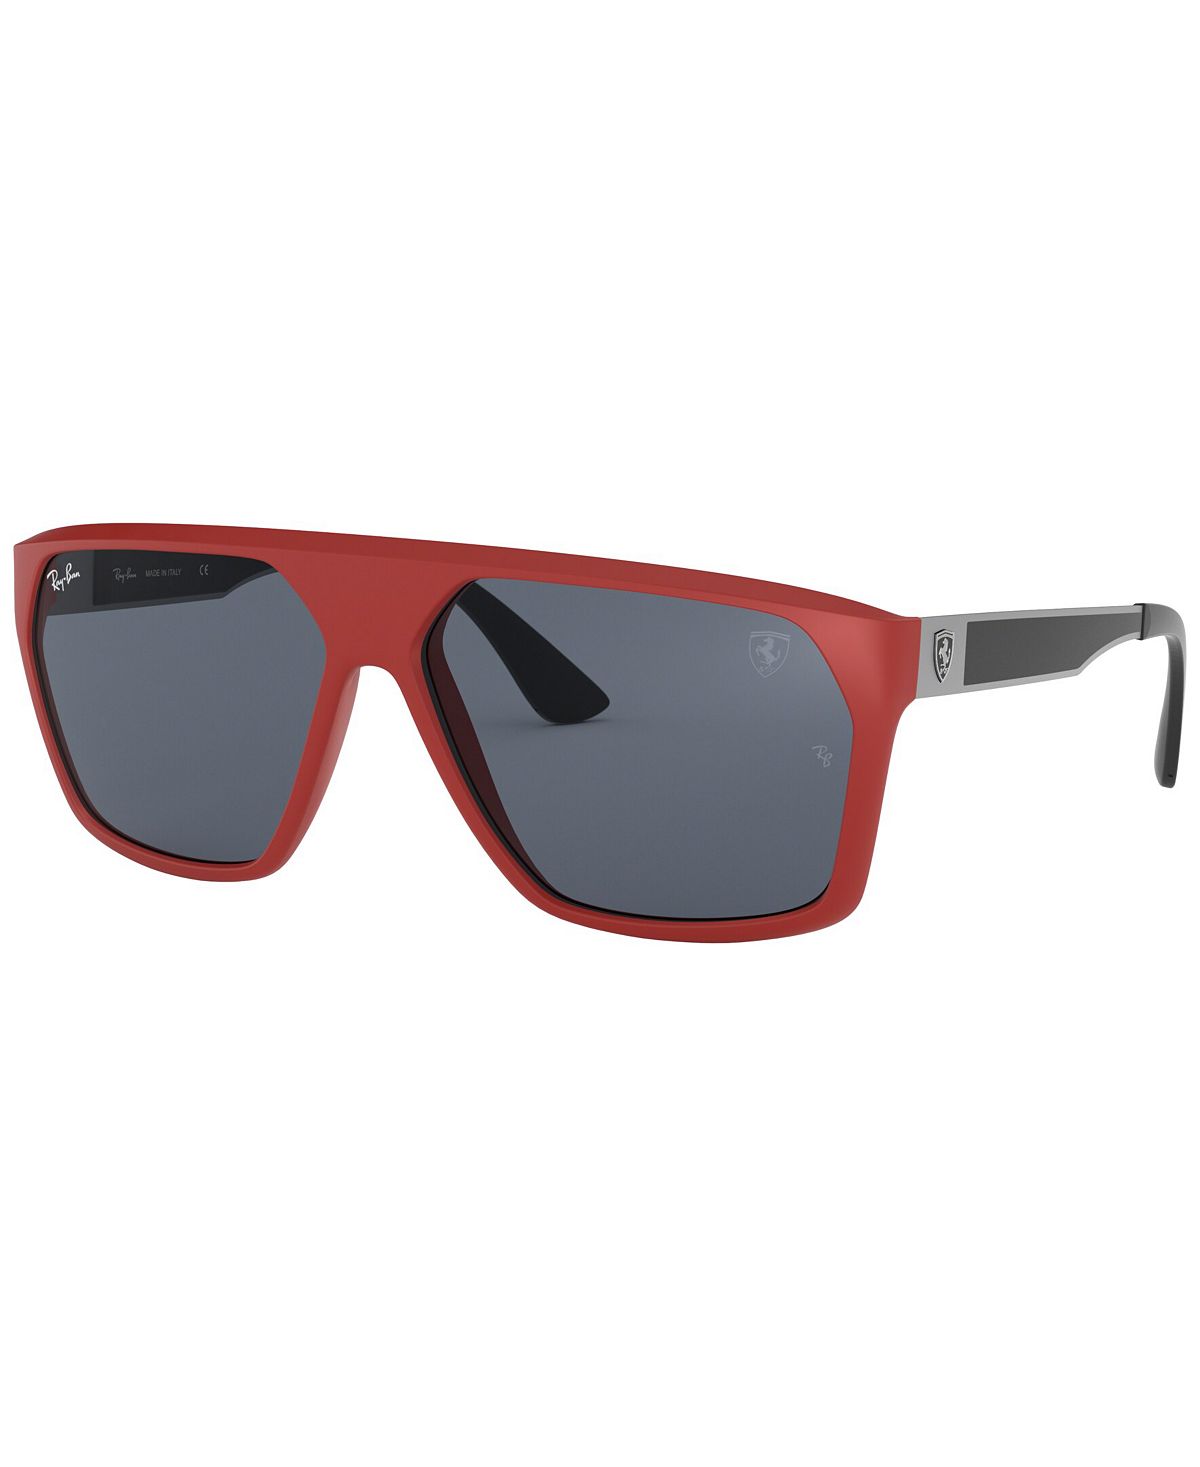 Мужские солнцезащитные очки, RB4309M Scuderia Ferrari Collection 60 Ray-Ban мужские солнцезащитные очки rb4310m scuderia ferrari collection 58 ray ban